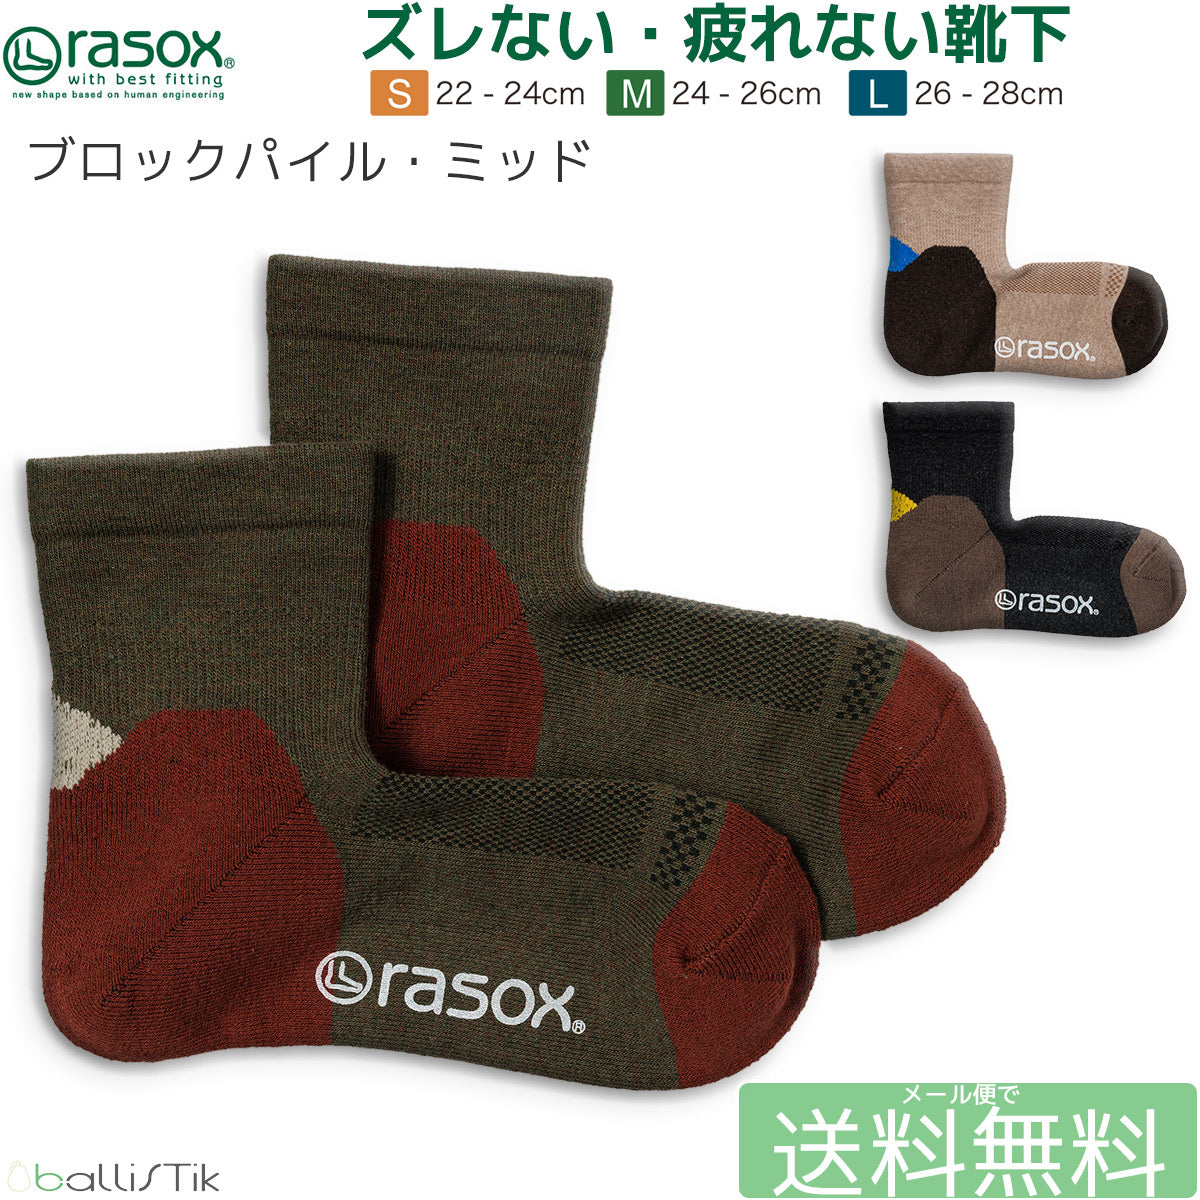 rasox/ラソックス/靴下/スニーカーソックス/ショートソックス/ロークルーソックス/ブロックパイルミッド